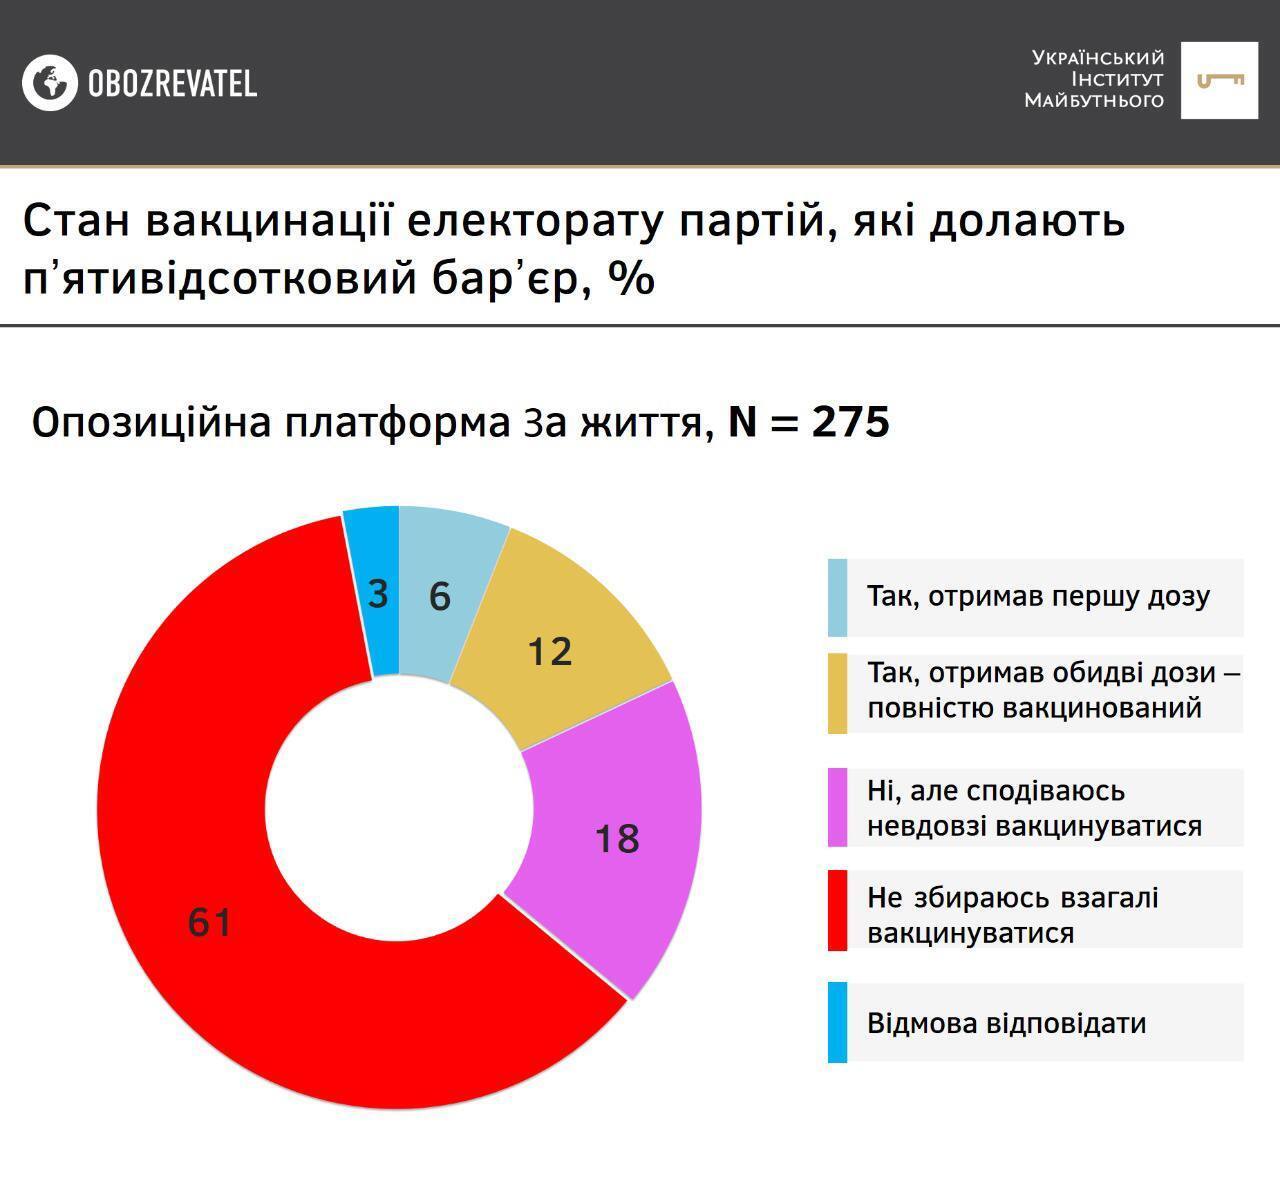 Результаты опроса среди сторонников партии "ОПЗЖ"